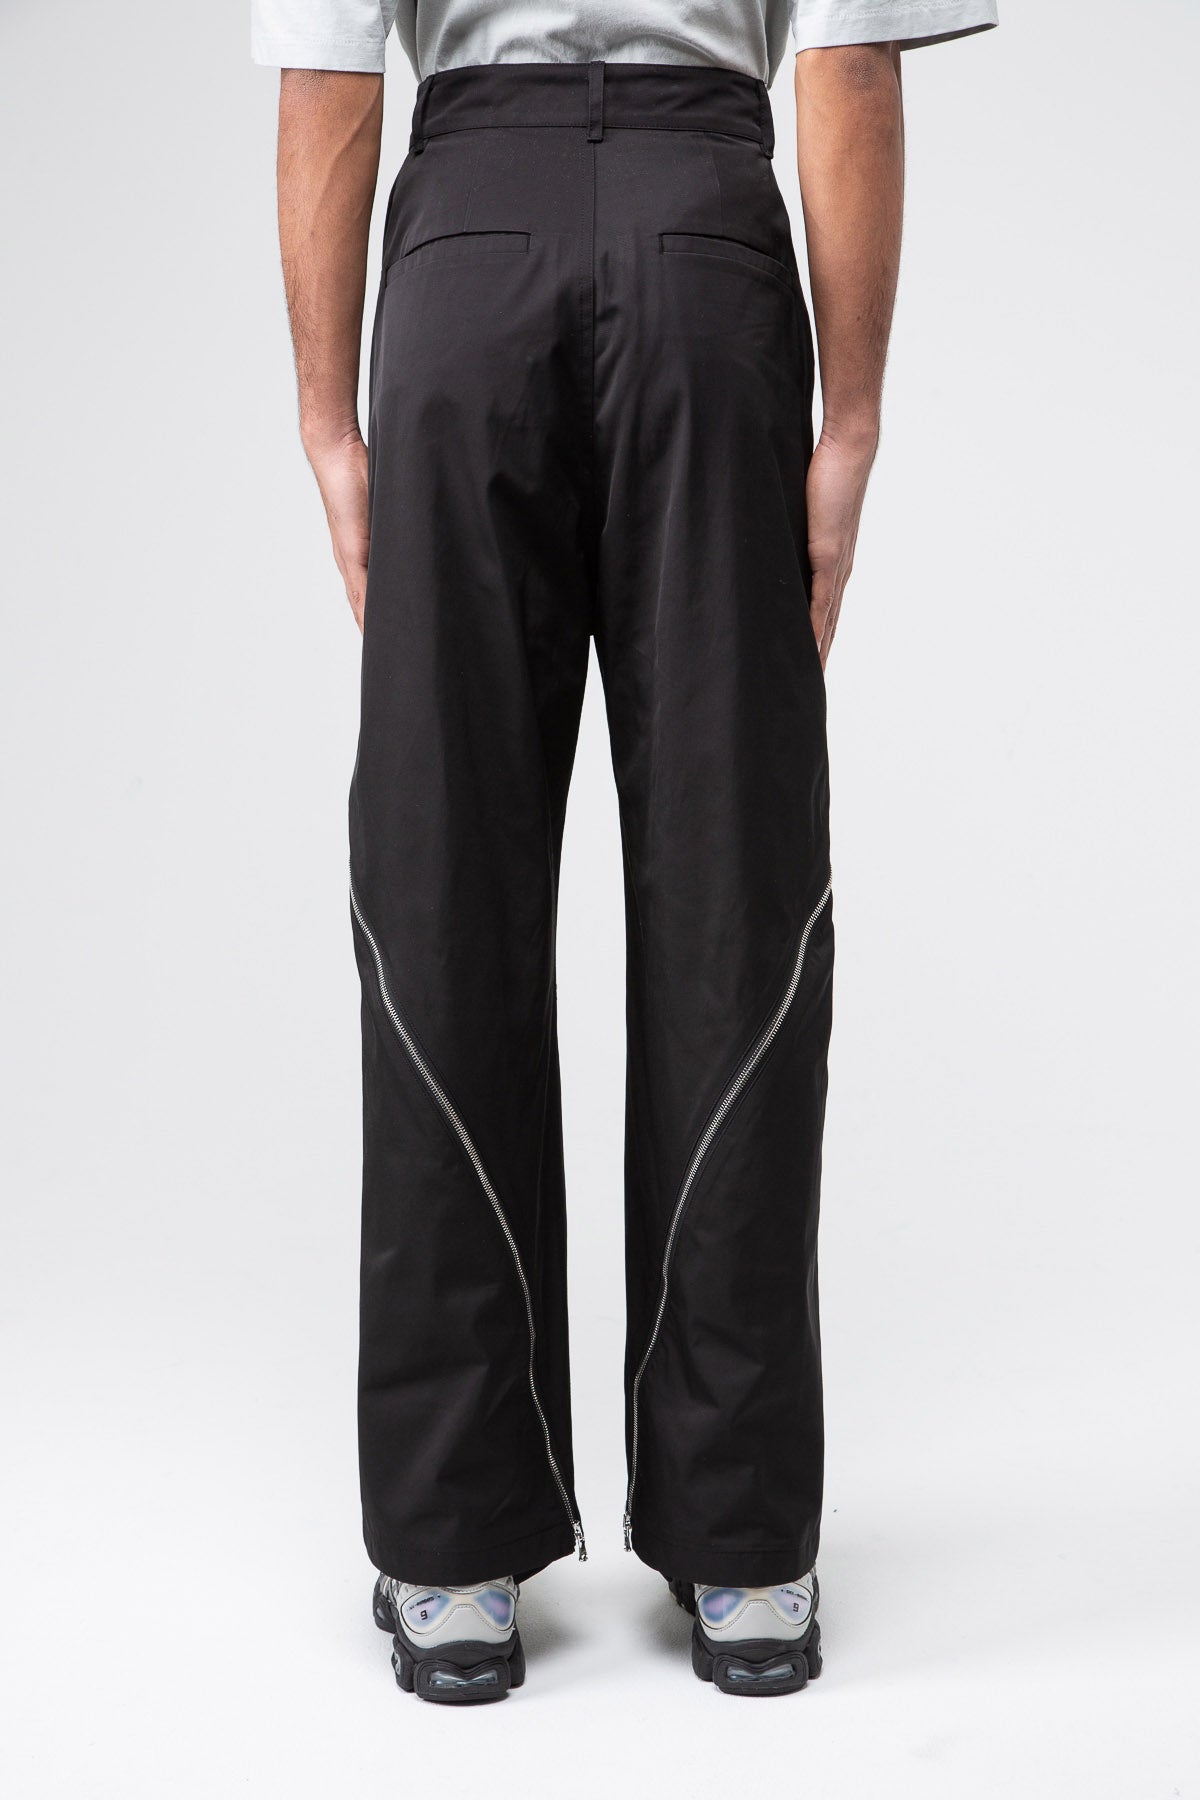 ヒップ110CMFFFPOSTALSERVICE Zip Trouser Black パンツ